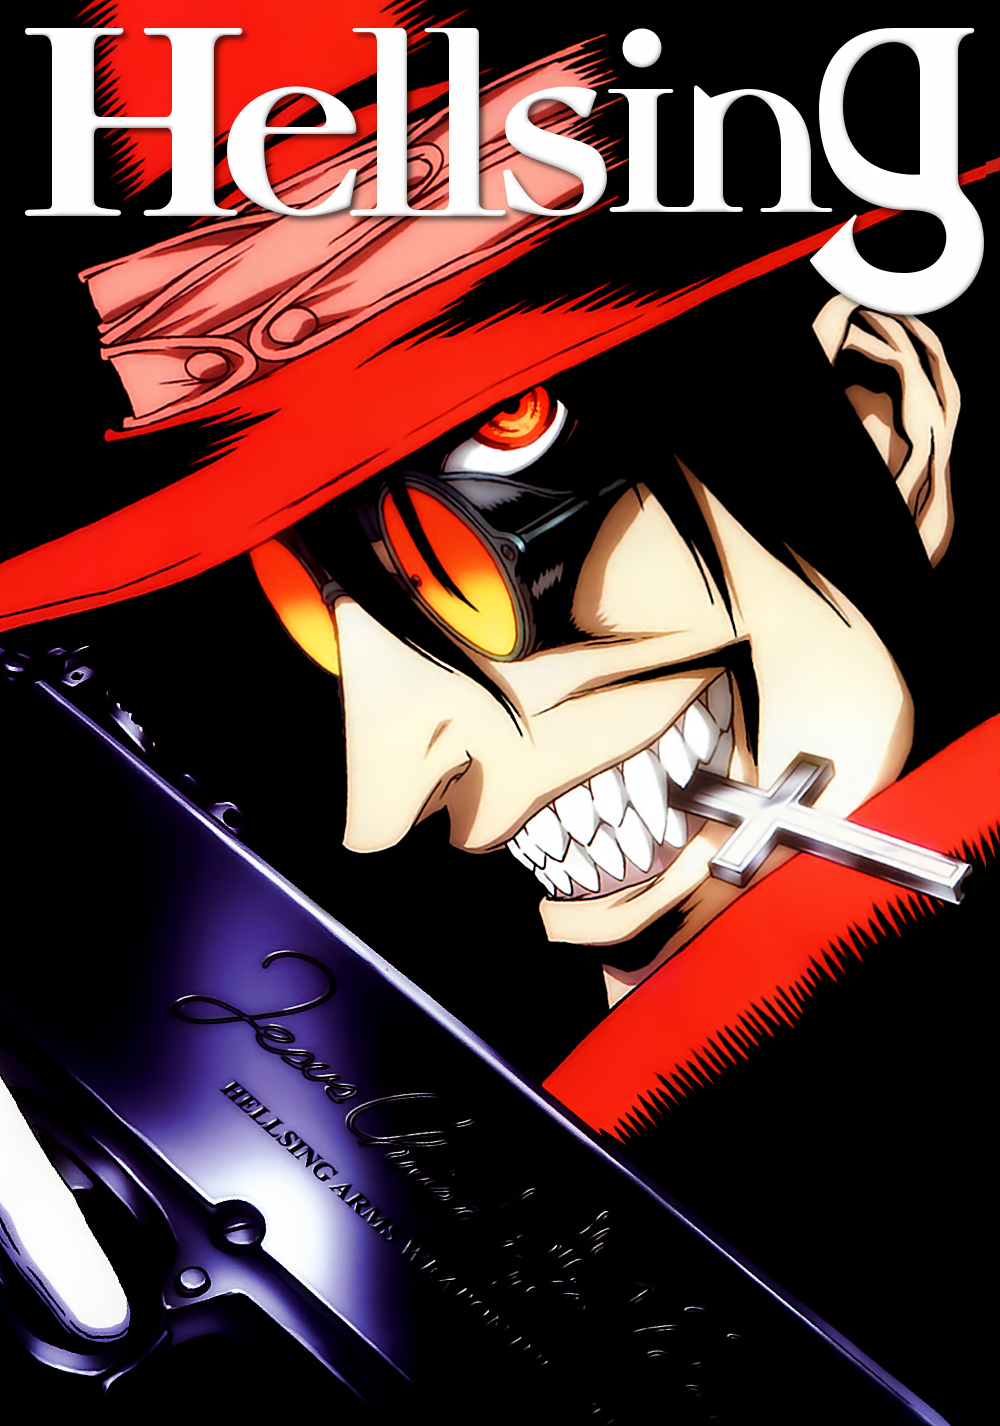 Hellsing | Hellsing ultimate anime, Anime shows, Anime titles